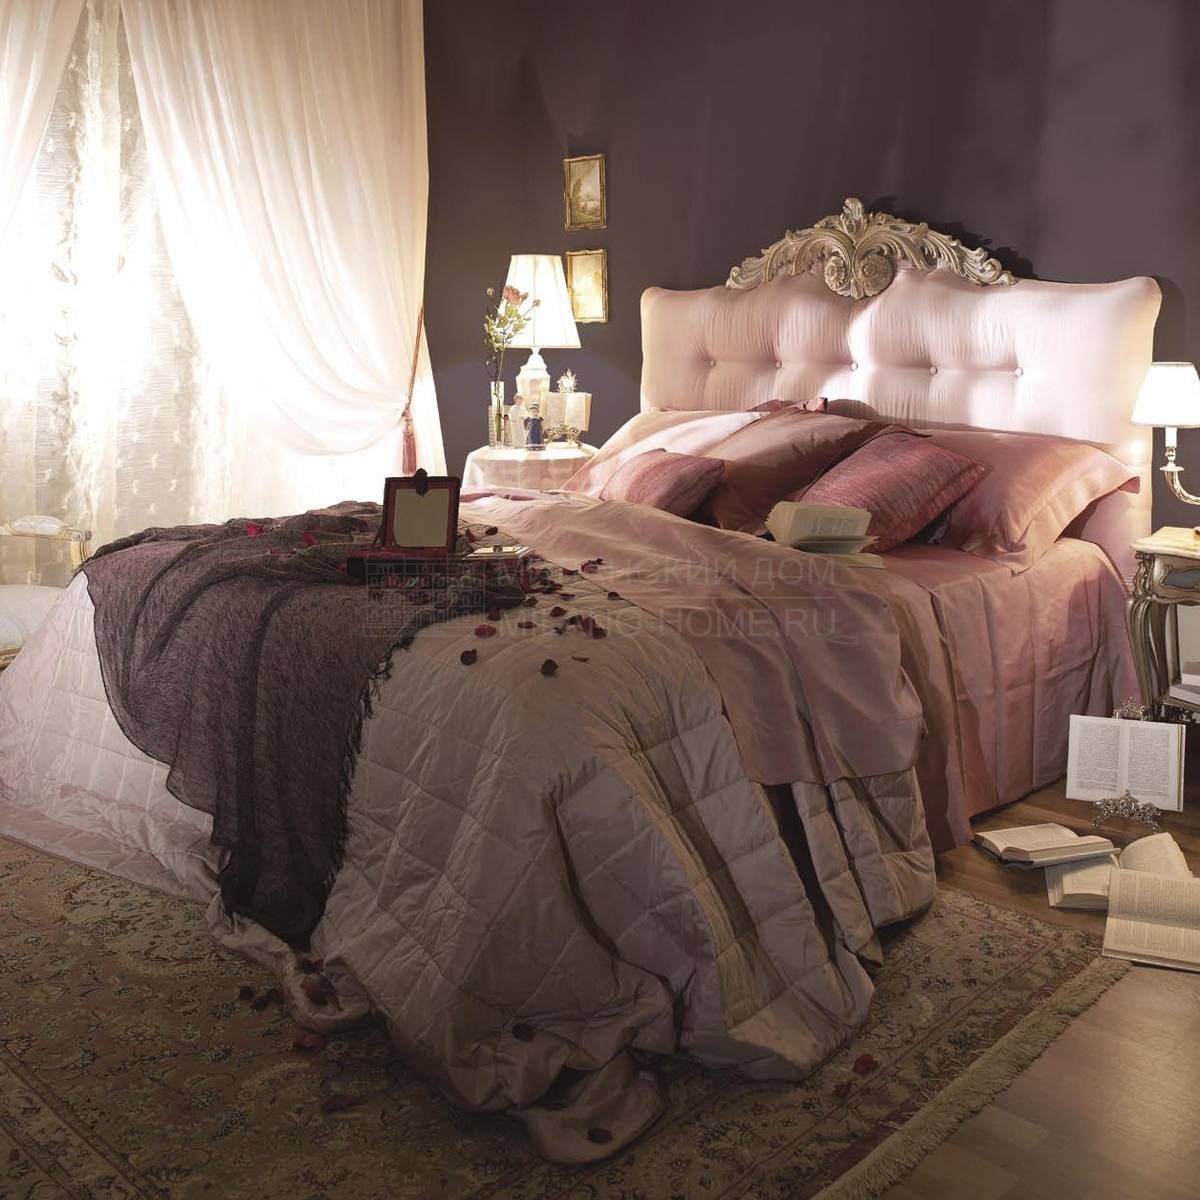 Двуспальная кровать PC 2011 Moon/bed из Италии фабрики ASNAGHI INTERIORS